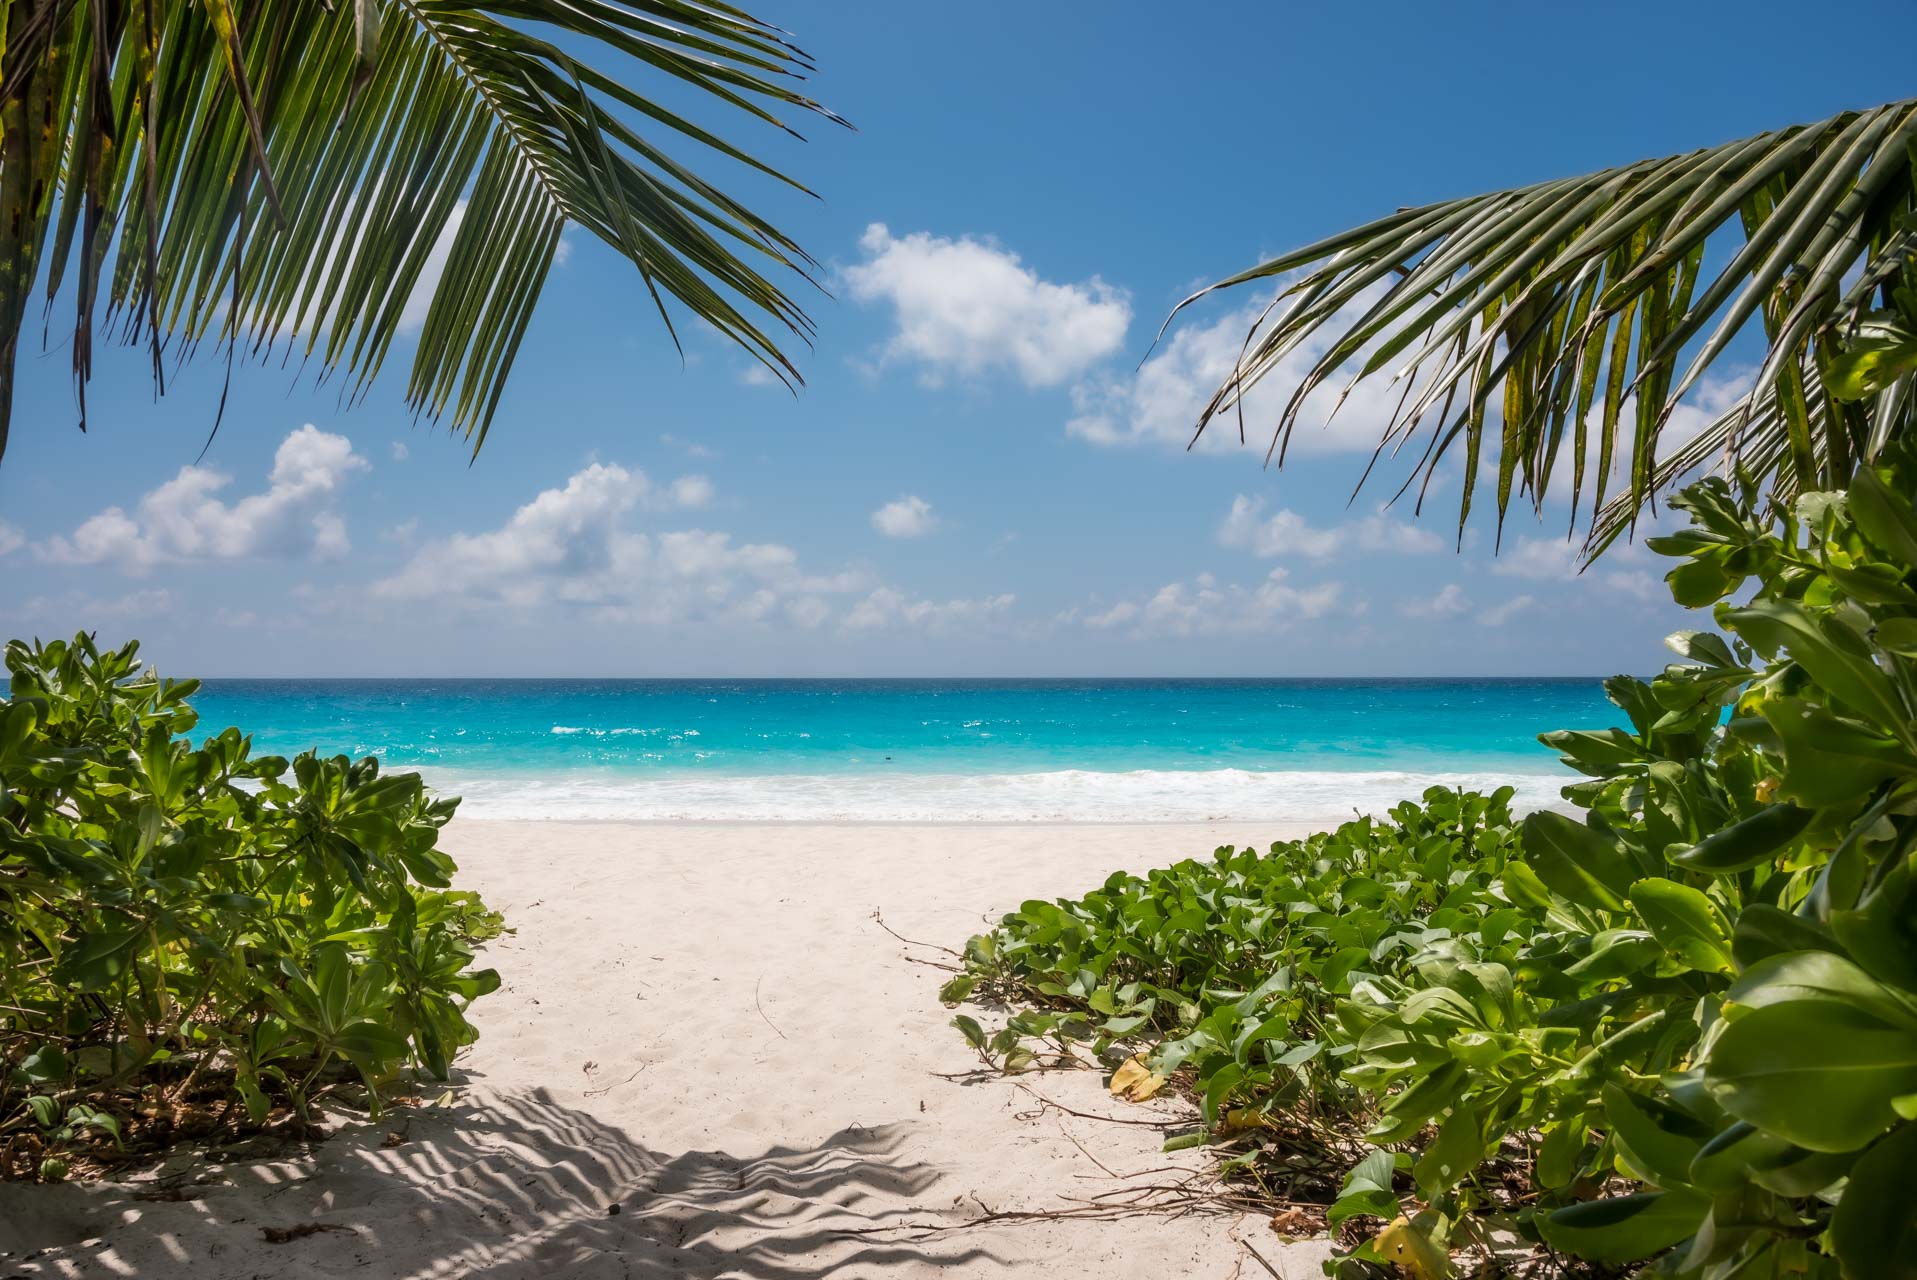 Sju skäl att sätta av till Seychellerna – ett fantastiskt ö-paradis!